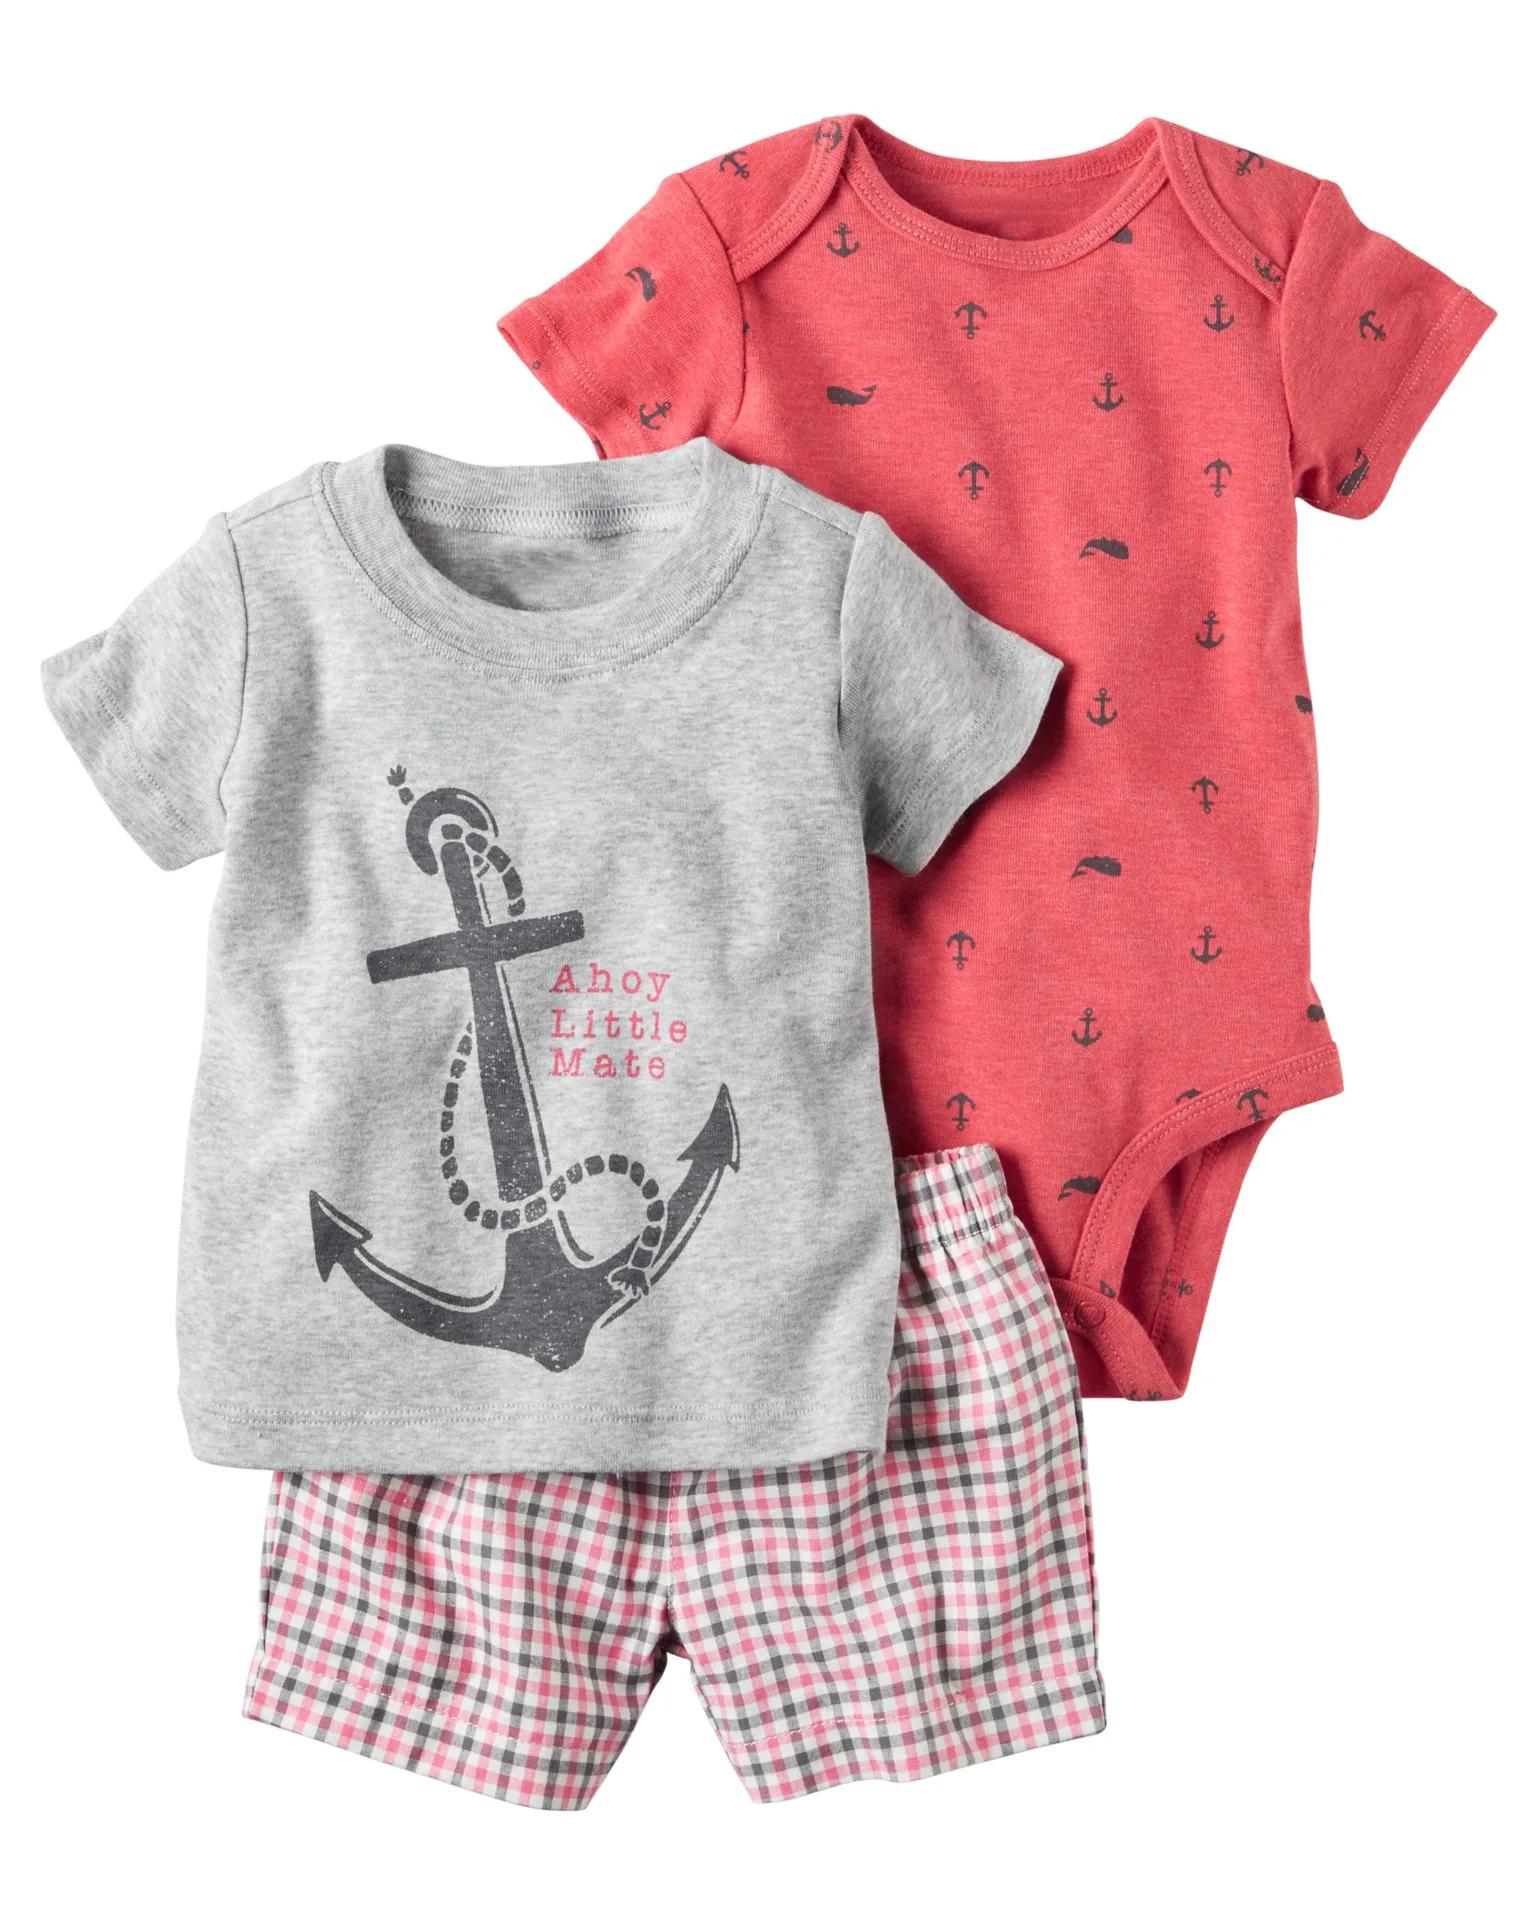 Г. Летний комплект одежды для новорожденных мальчиков, хлопковая Футболка с героями мультфильмов+ боди+ шорты, комплект из 3 предметов, одежда для маленьких мальчиков, Пижама